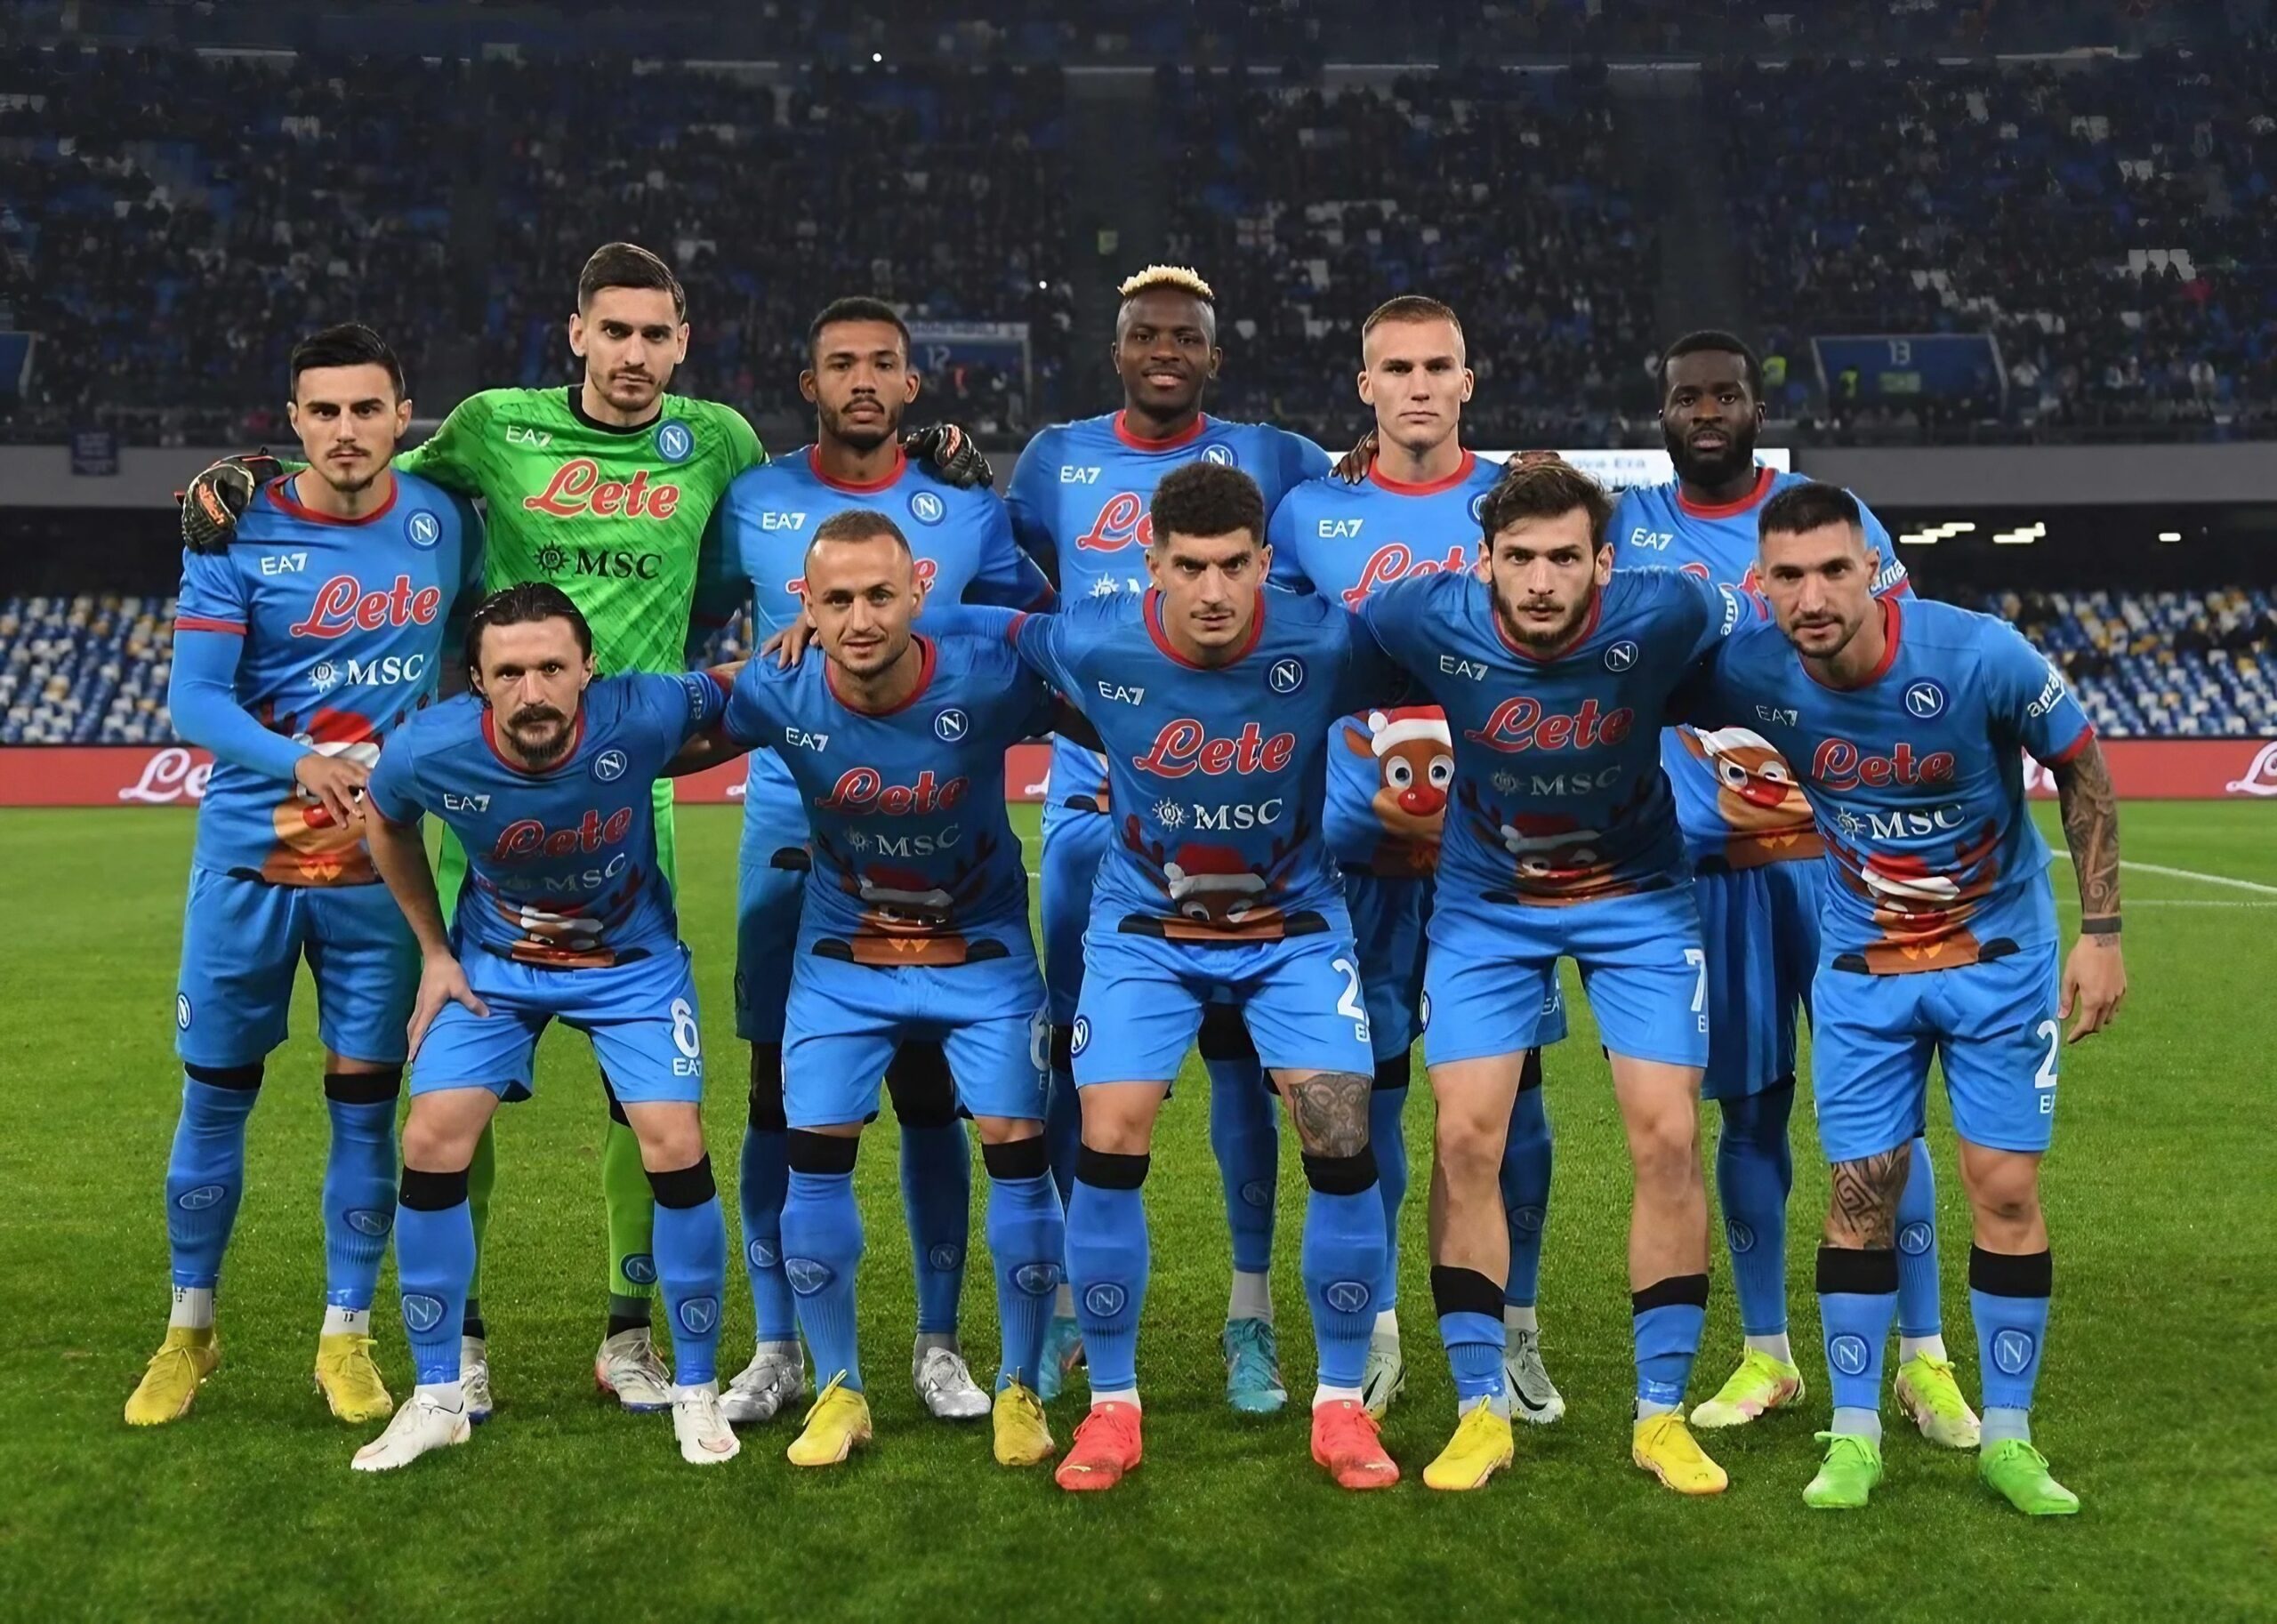 Squadra SSC Napoli in posa per una foto prima di una partita